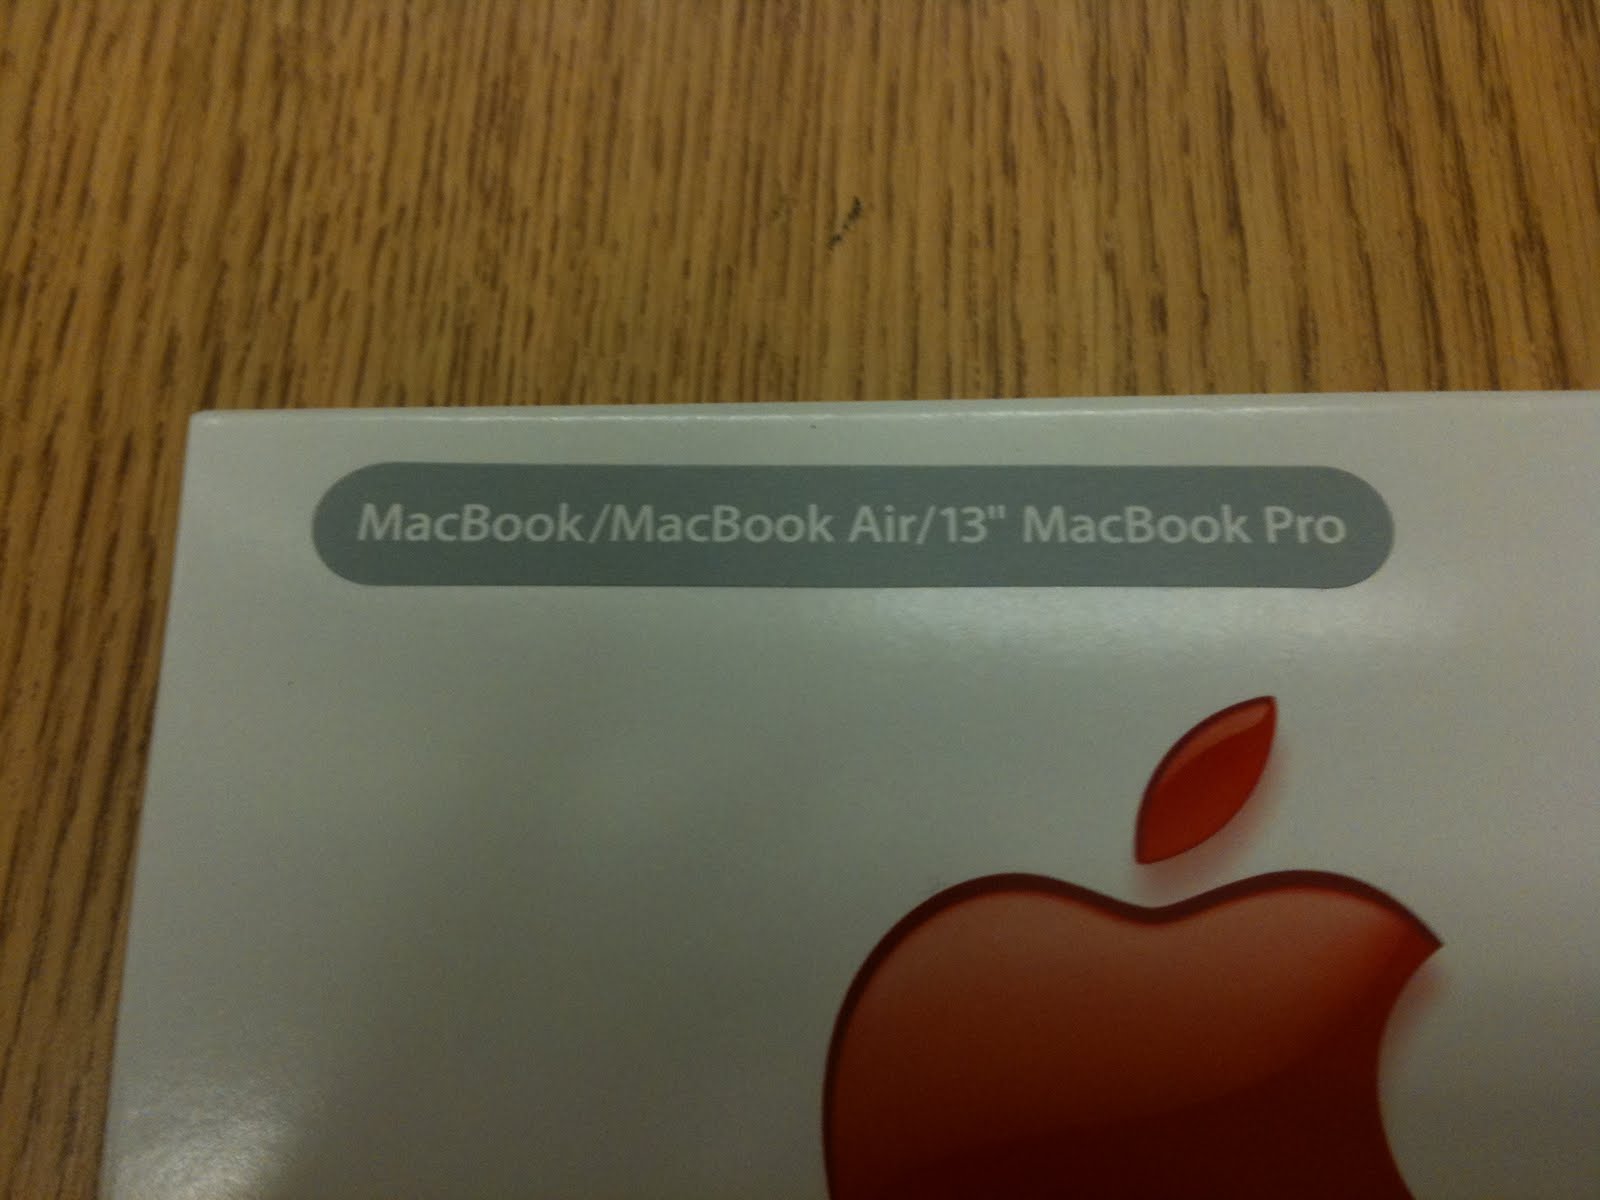 ... Macbook Pro 13 Inch 2010, A 13 Inch MacBook Pro, MacBook Pro 2011 13